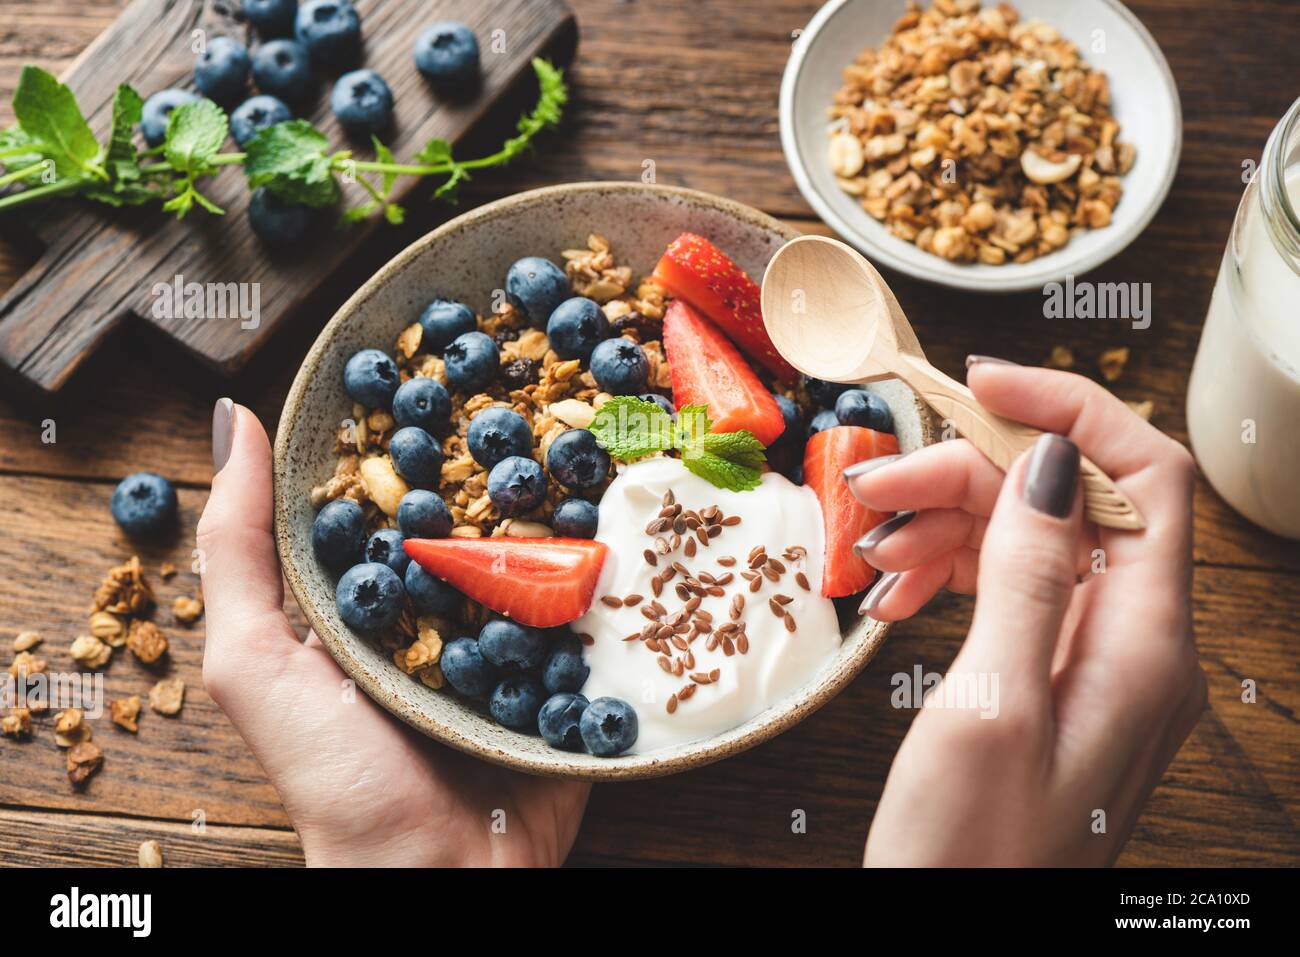 Mangiare granola con yogurt greco e frutti di bosco. Le mani femminili tengono la ciotola dei cereali sani della prima colazione con la frutta e lo yogurt. Concetto di pulizia Foto Stock